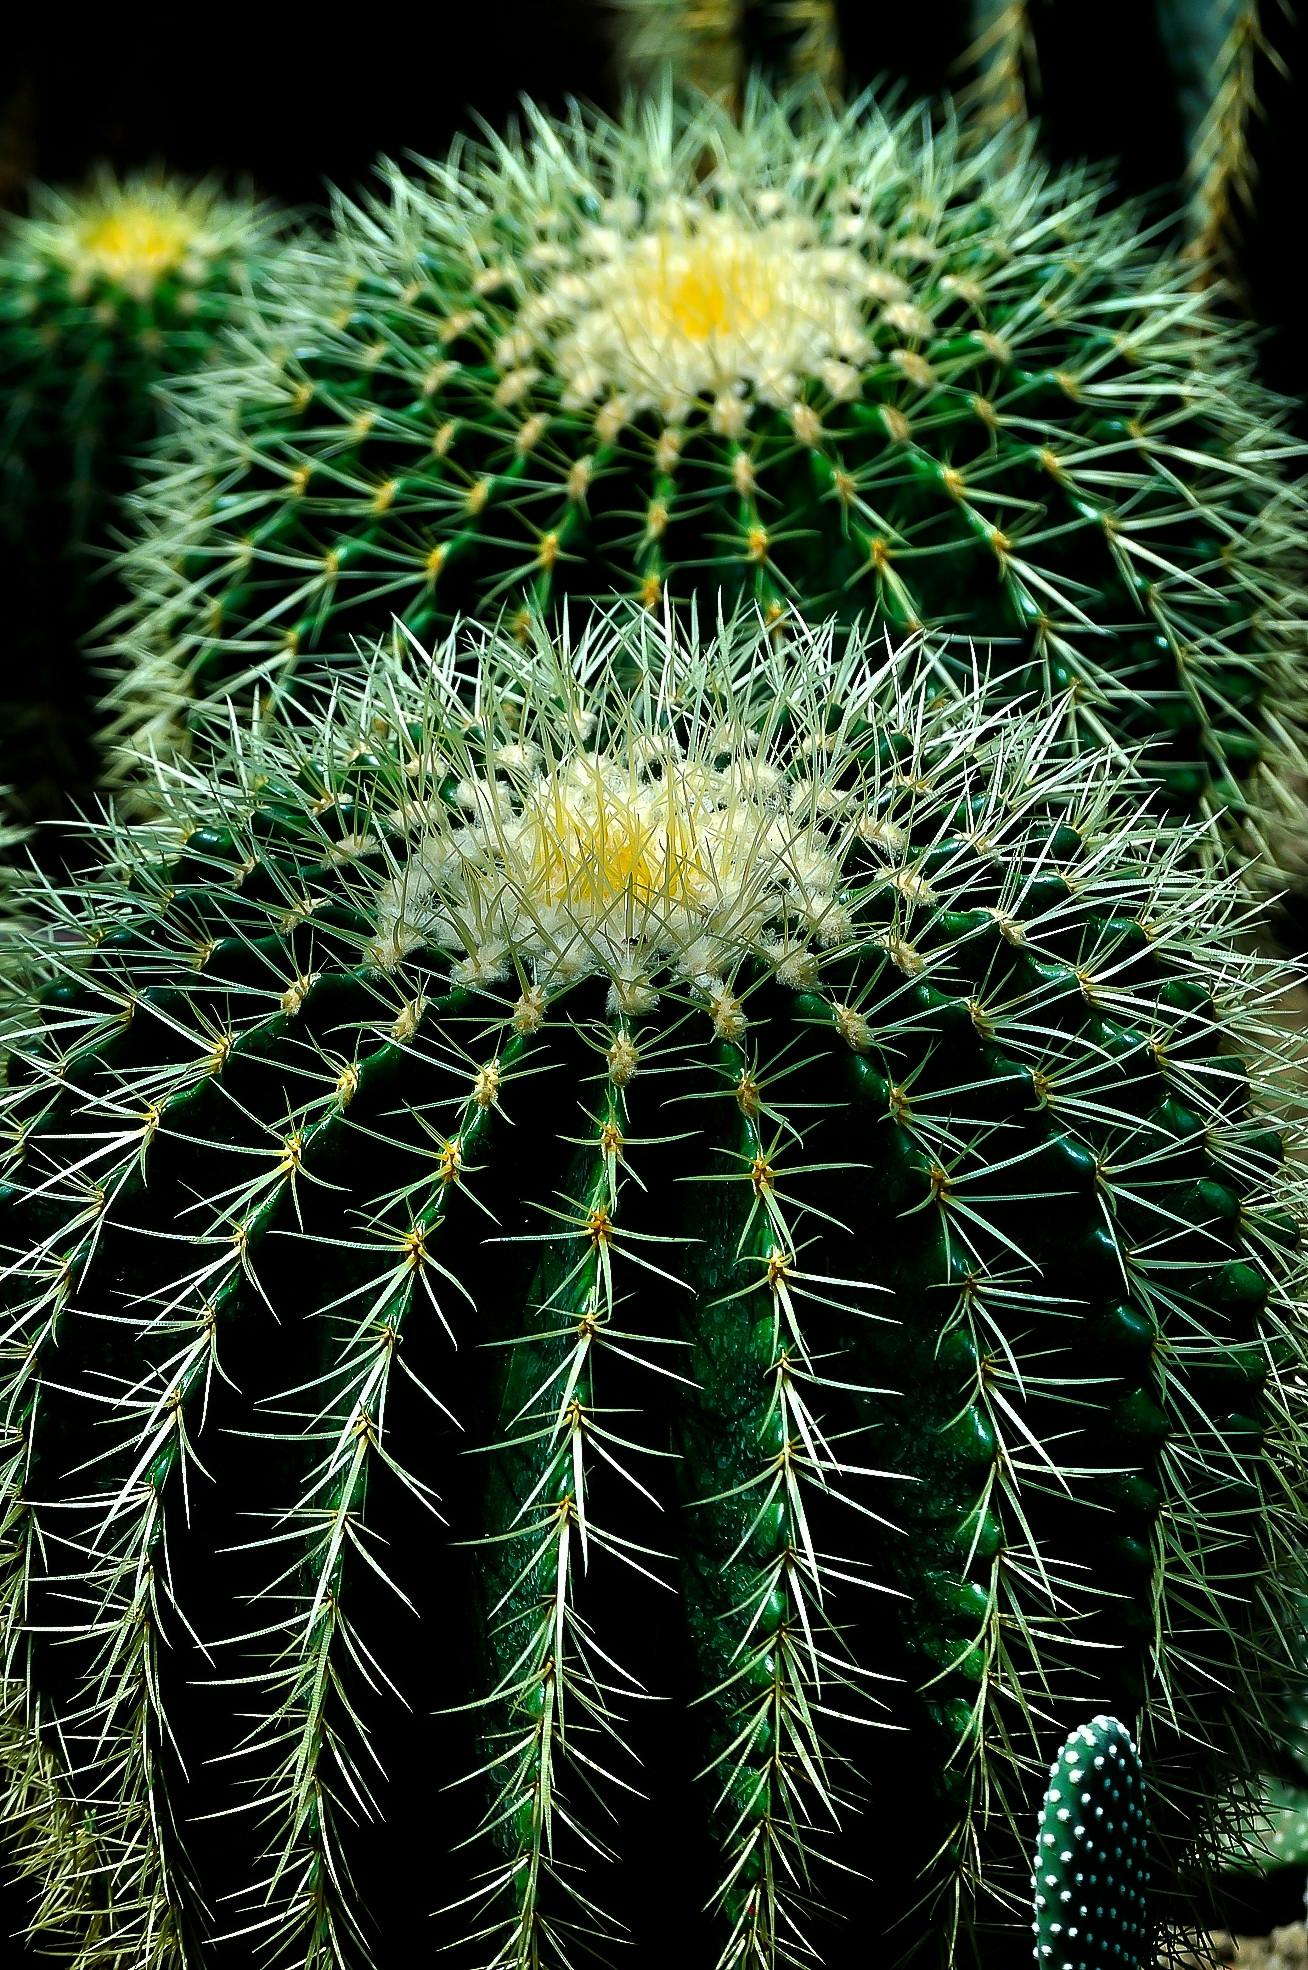  Cactus  Plant  Free Stock Photo